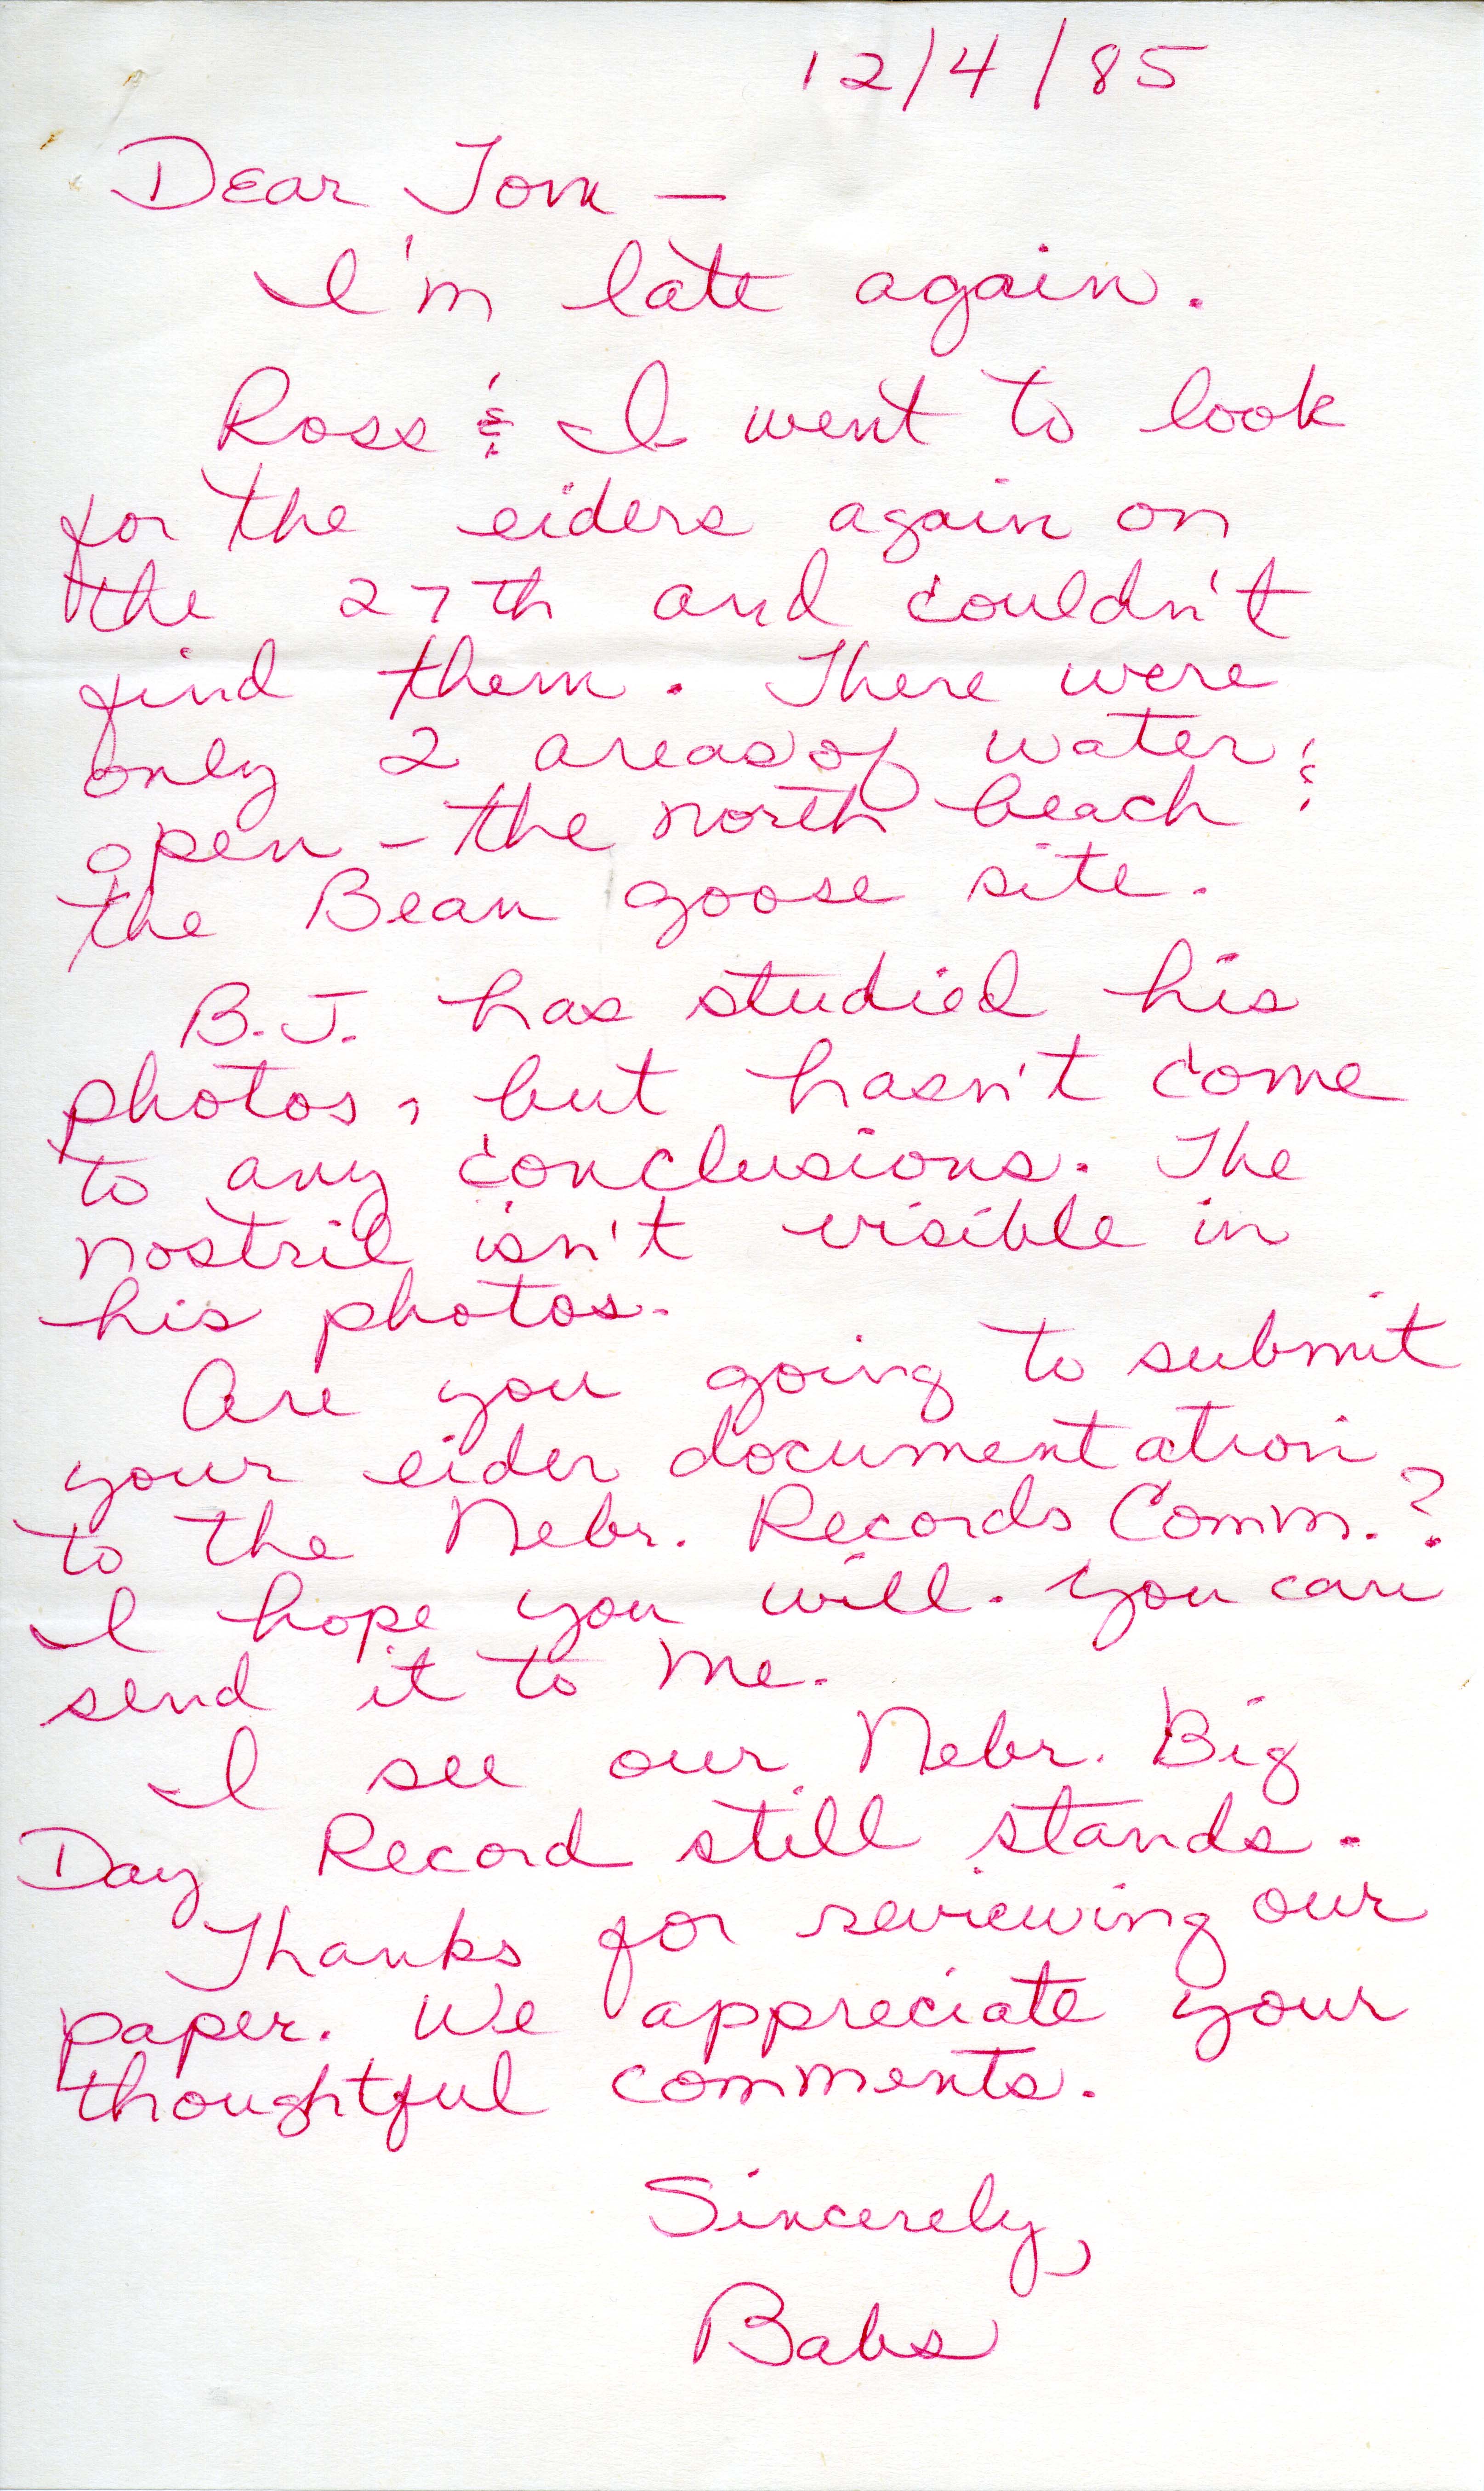 Babs Padelford letter to Thomas Kent regarding Eider sighting, December 4, 1985